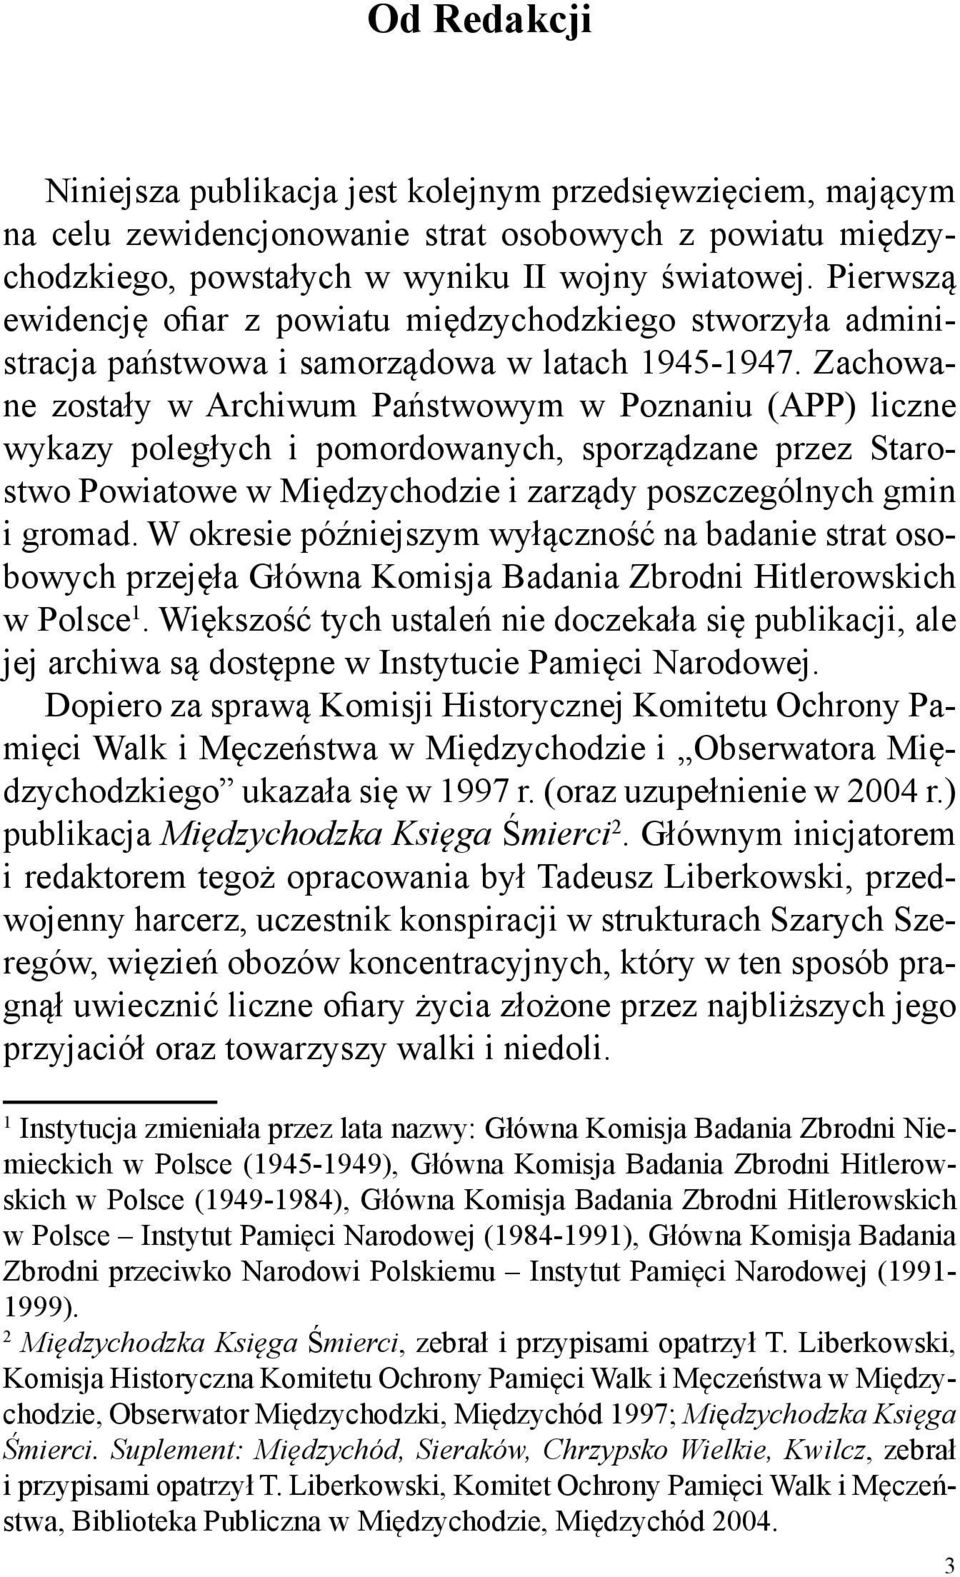 Zachowane zostały w Archiwum Państwowym w Poznaniu (APP) liczne wykazy poległych i pomordowanych, sporządzane przez Starostwo Powiatowe w Międzychodzie i zarządy poszczególnych gmin i gromad.